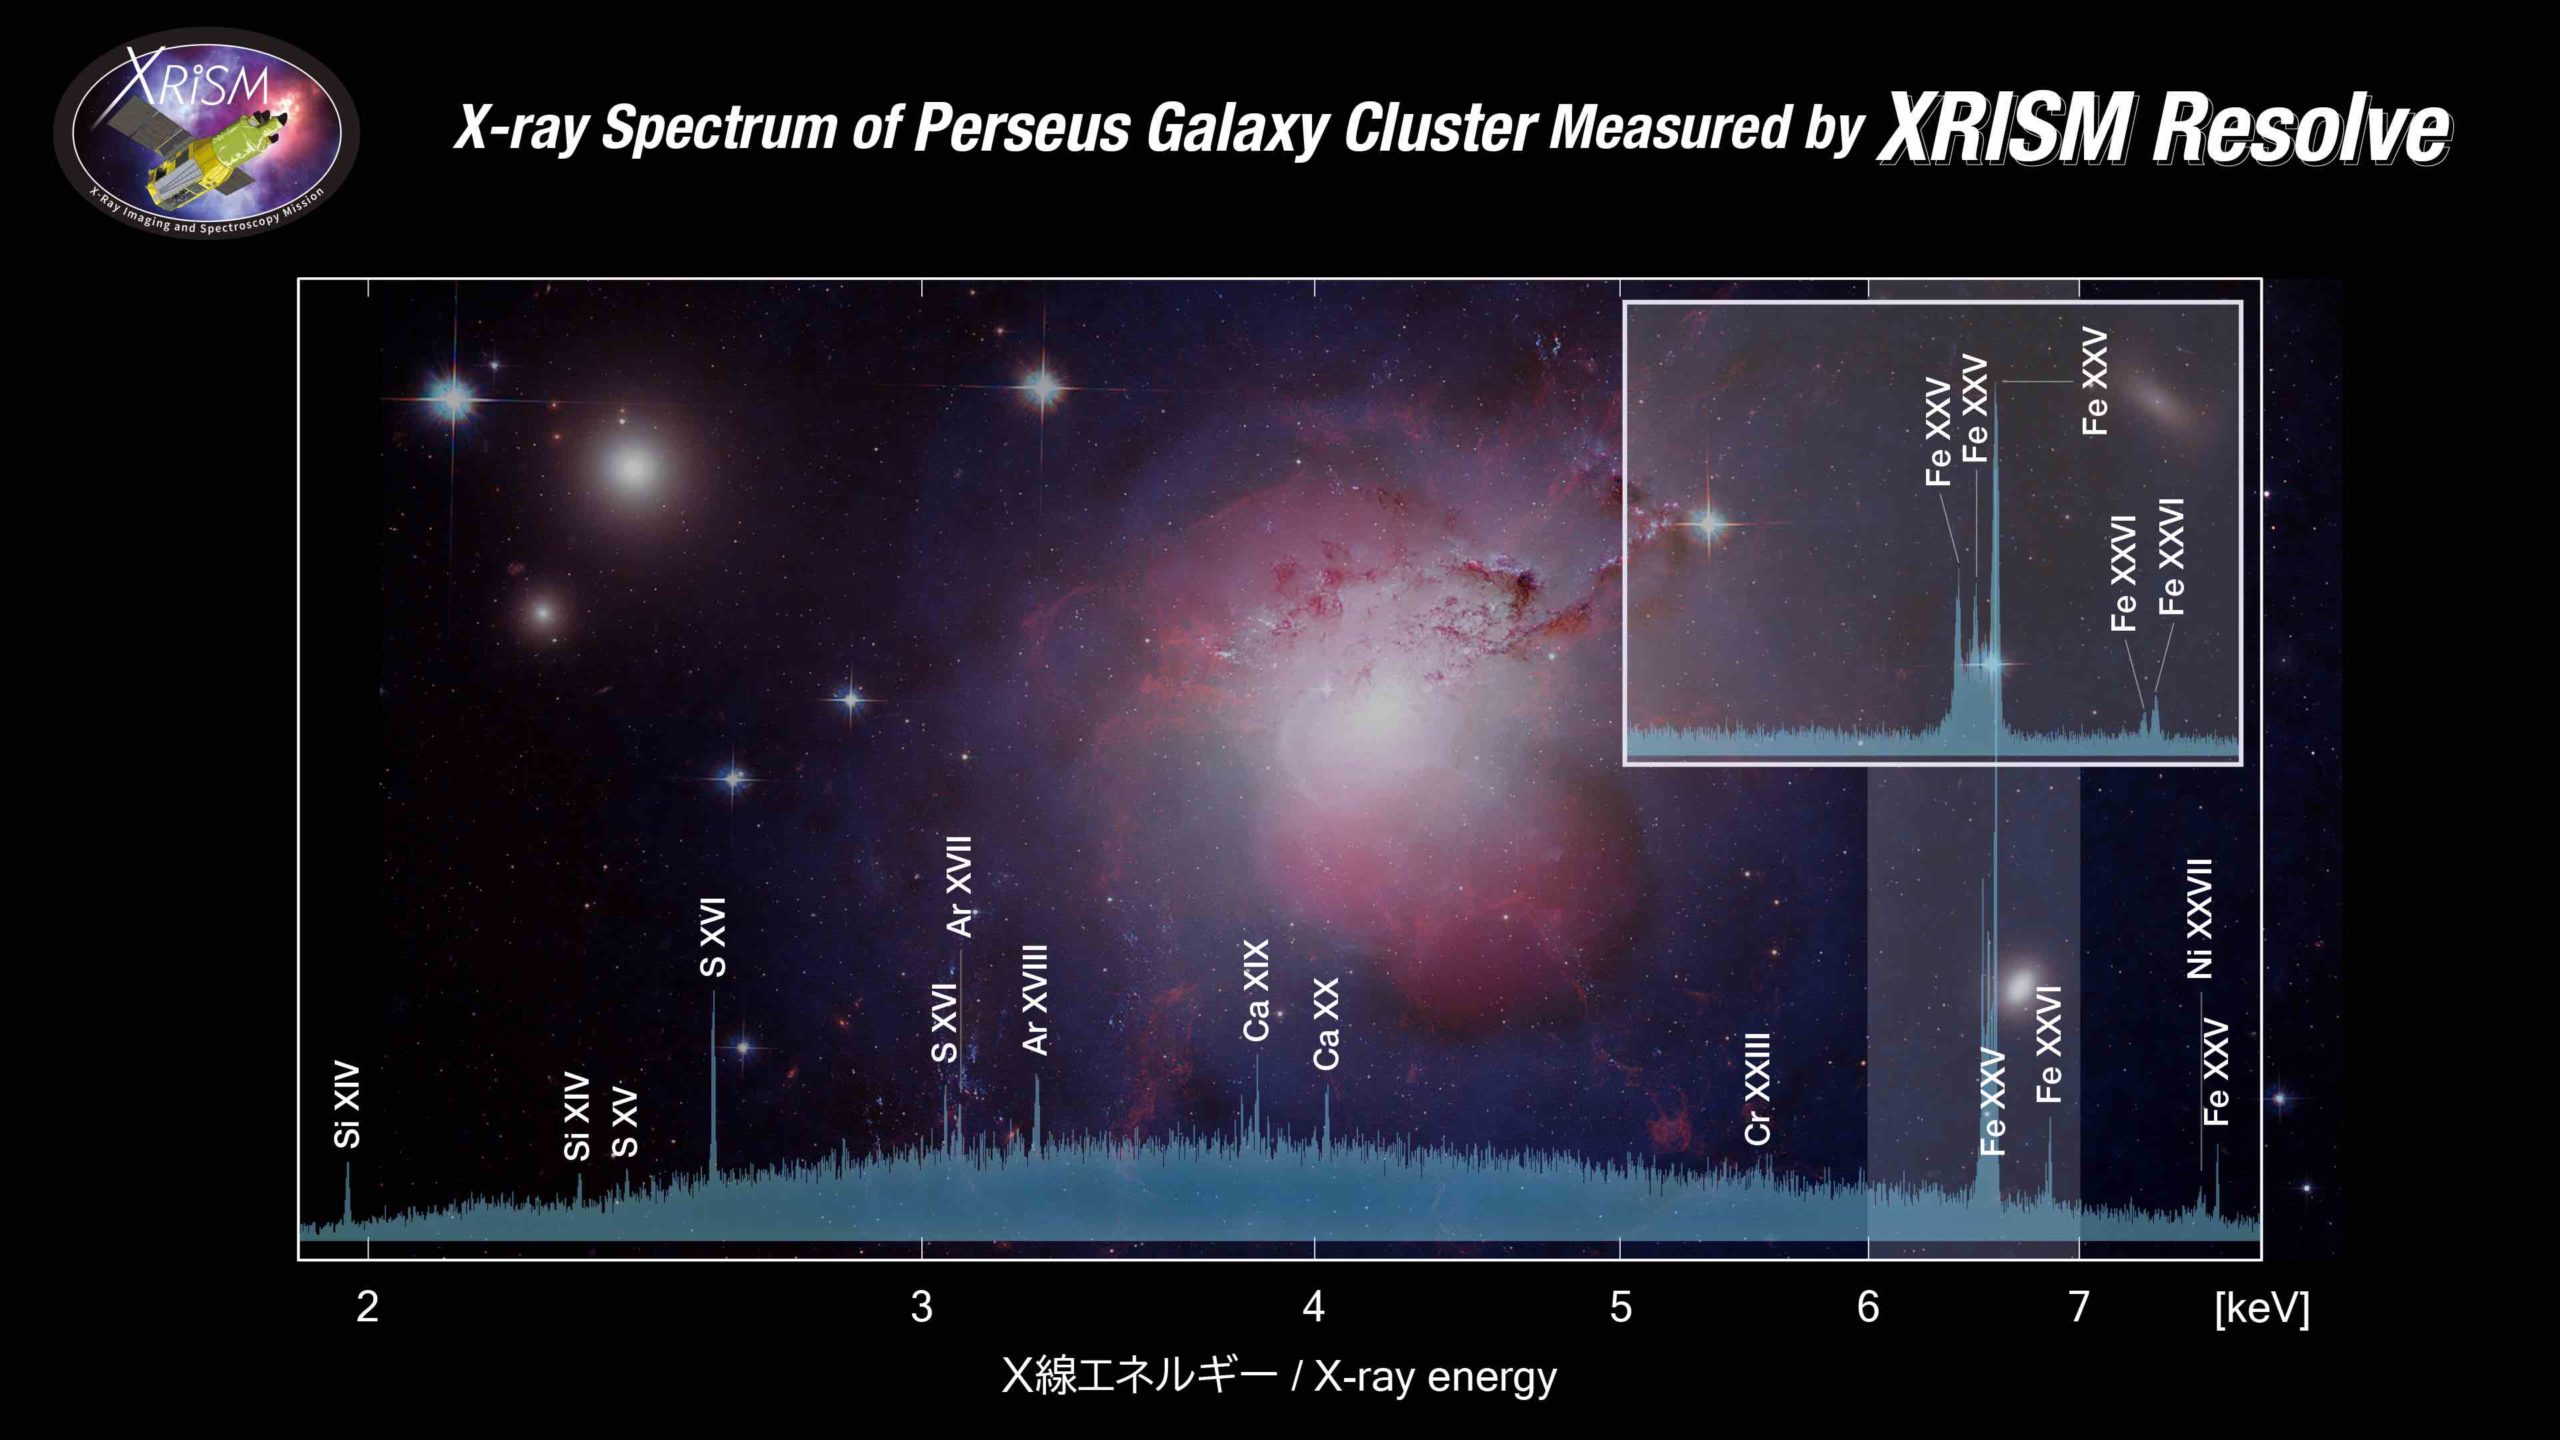 XRISMのペルセウス座銀河団のスペクトル